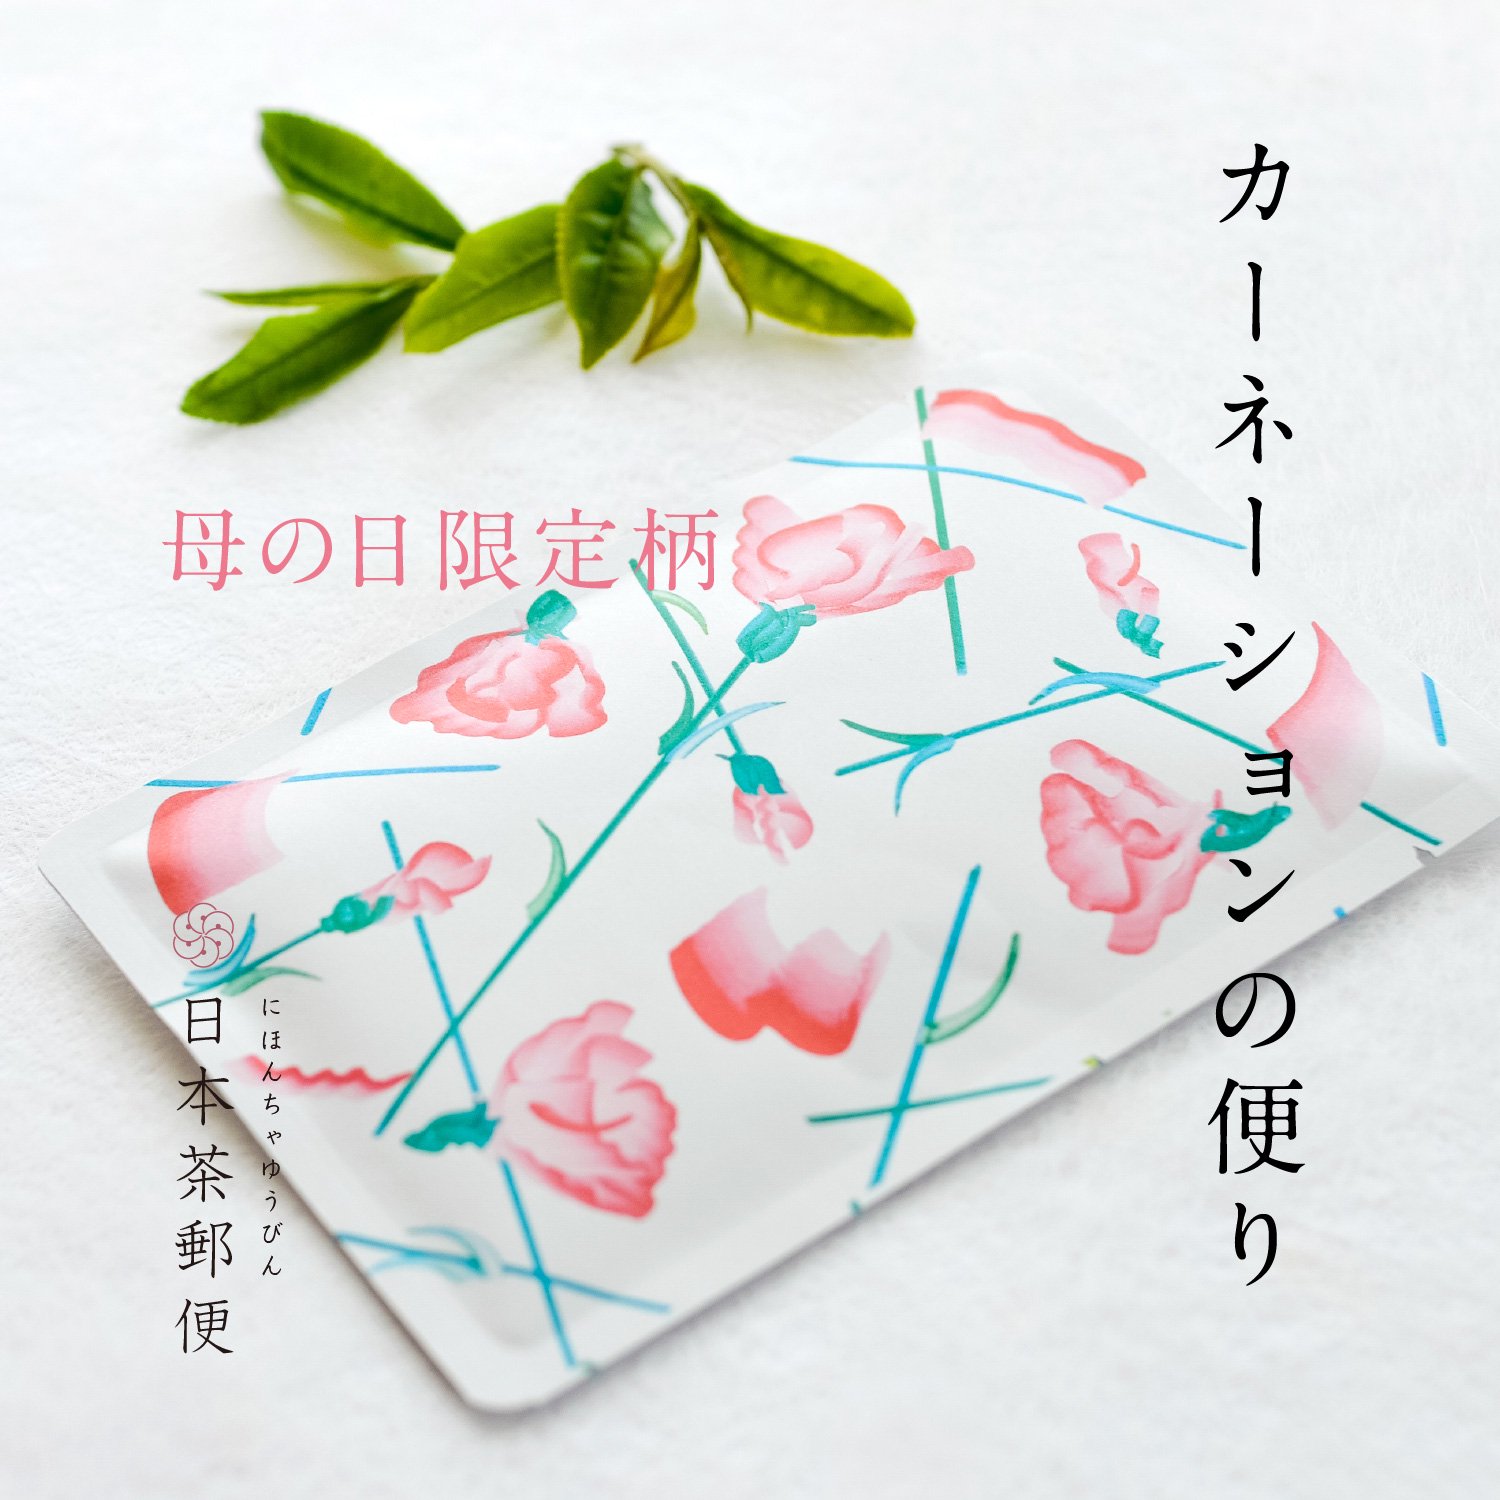 日本茶郵便「母の日カーネーションの便り」｜おいしい日本茶研究所